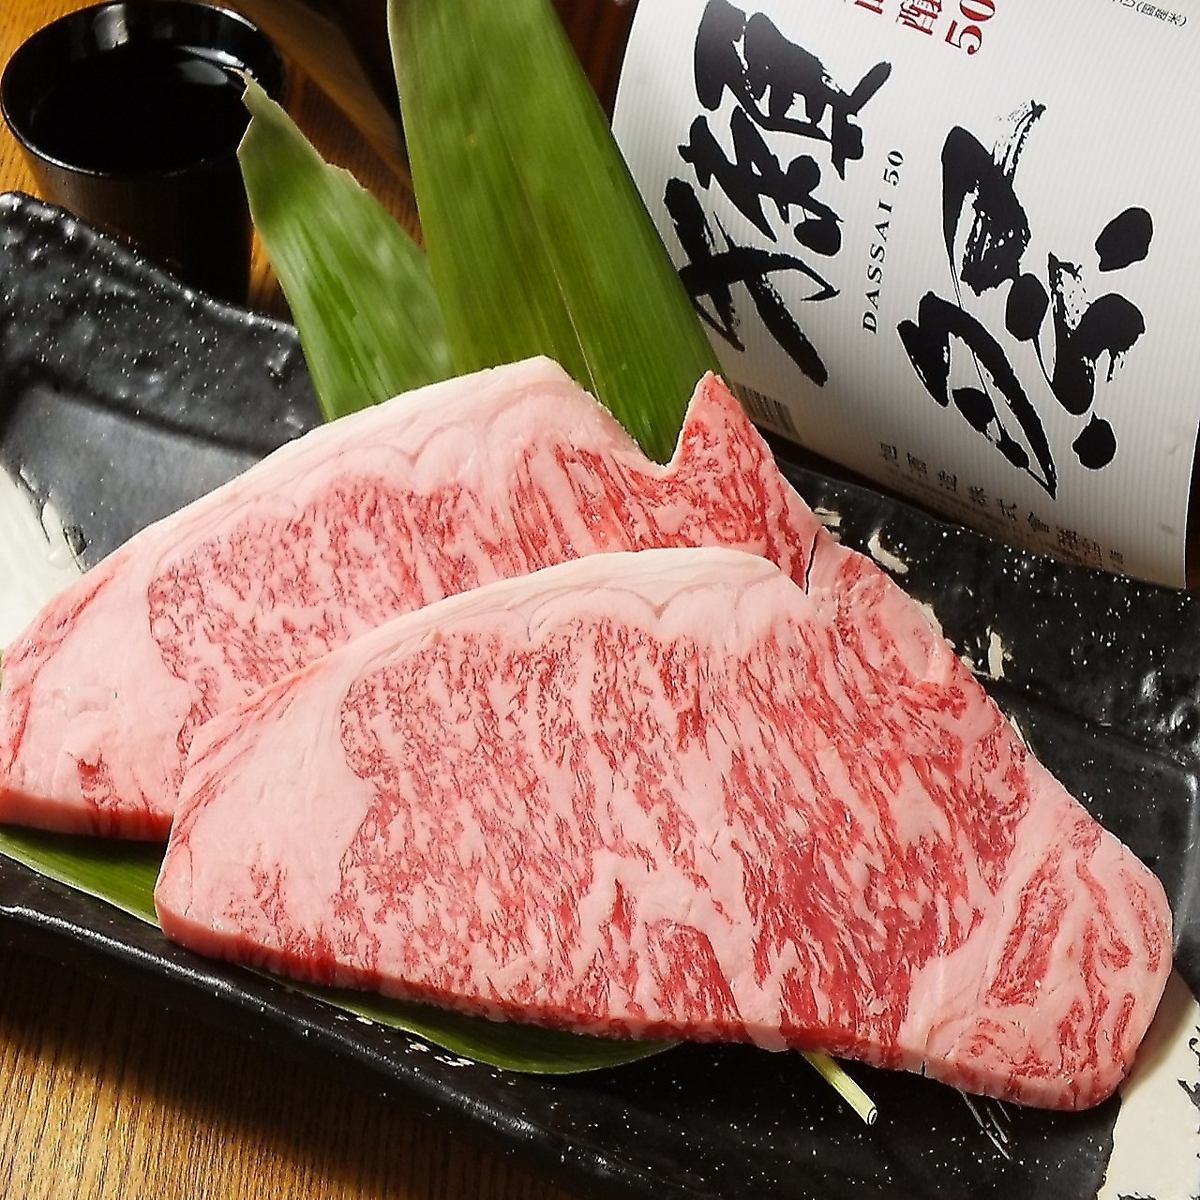 您可以享用廣島的品牌牛肉“關下牛肉”♪